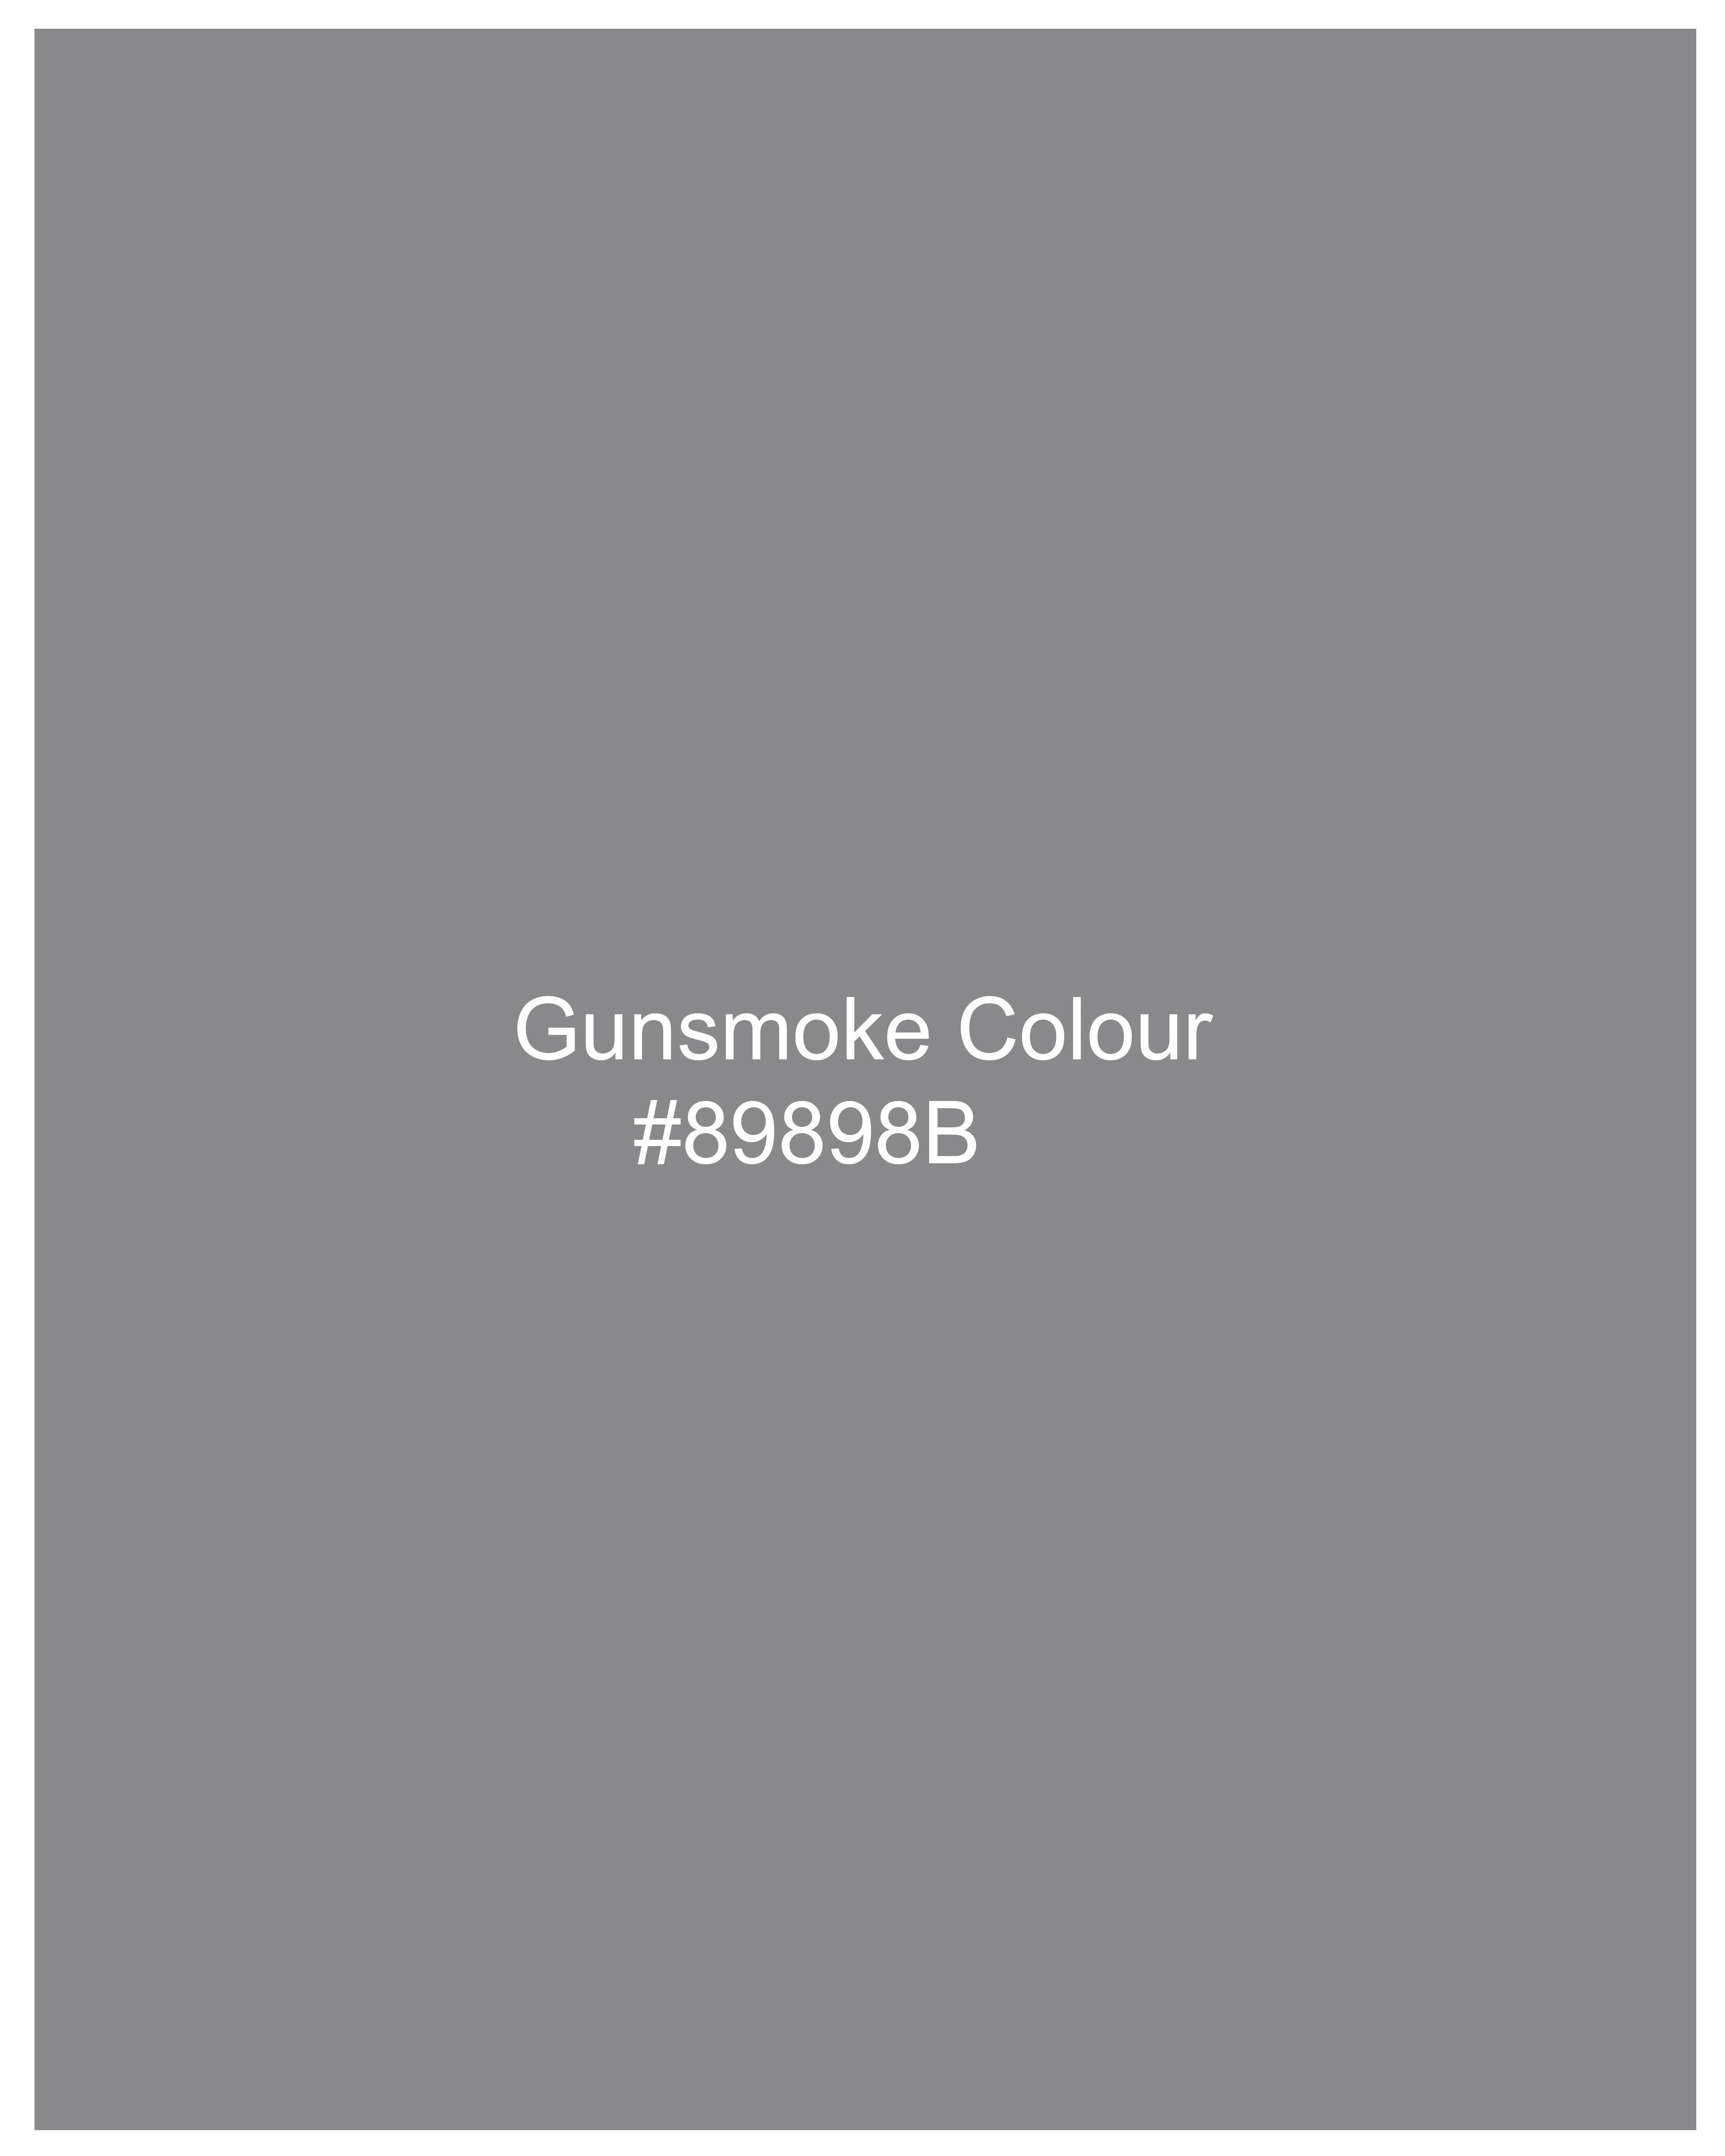 Gunsmoke Gray Printed Premium Cotton Top WTP032-32, WTP032-34, WTP032-36, WTP032-38, WTP032-40, WTP032-42